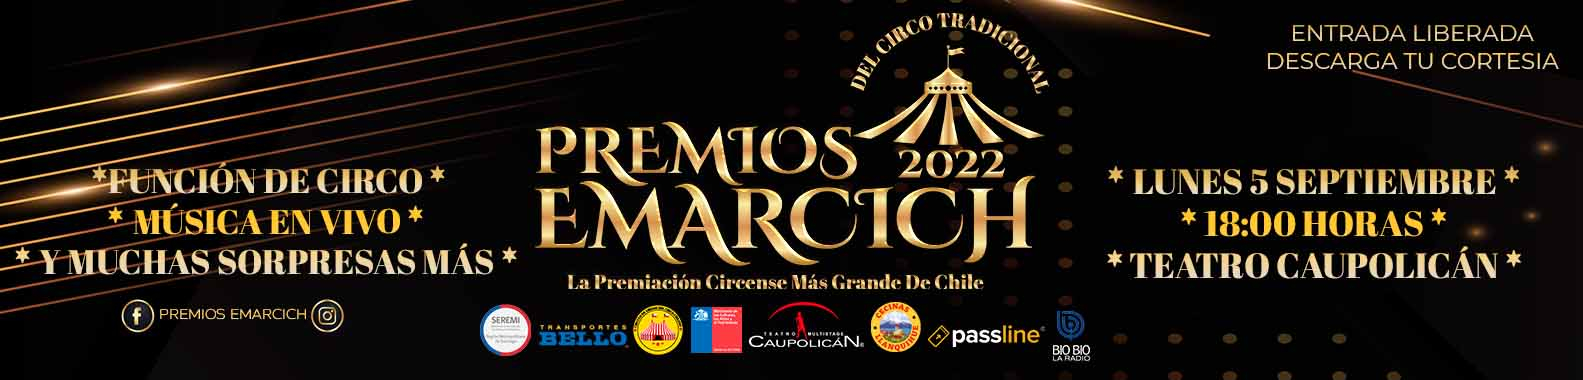 Banner Premios Emarcich